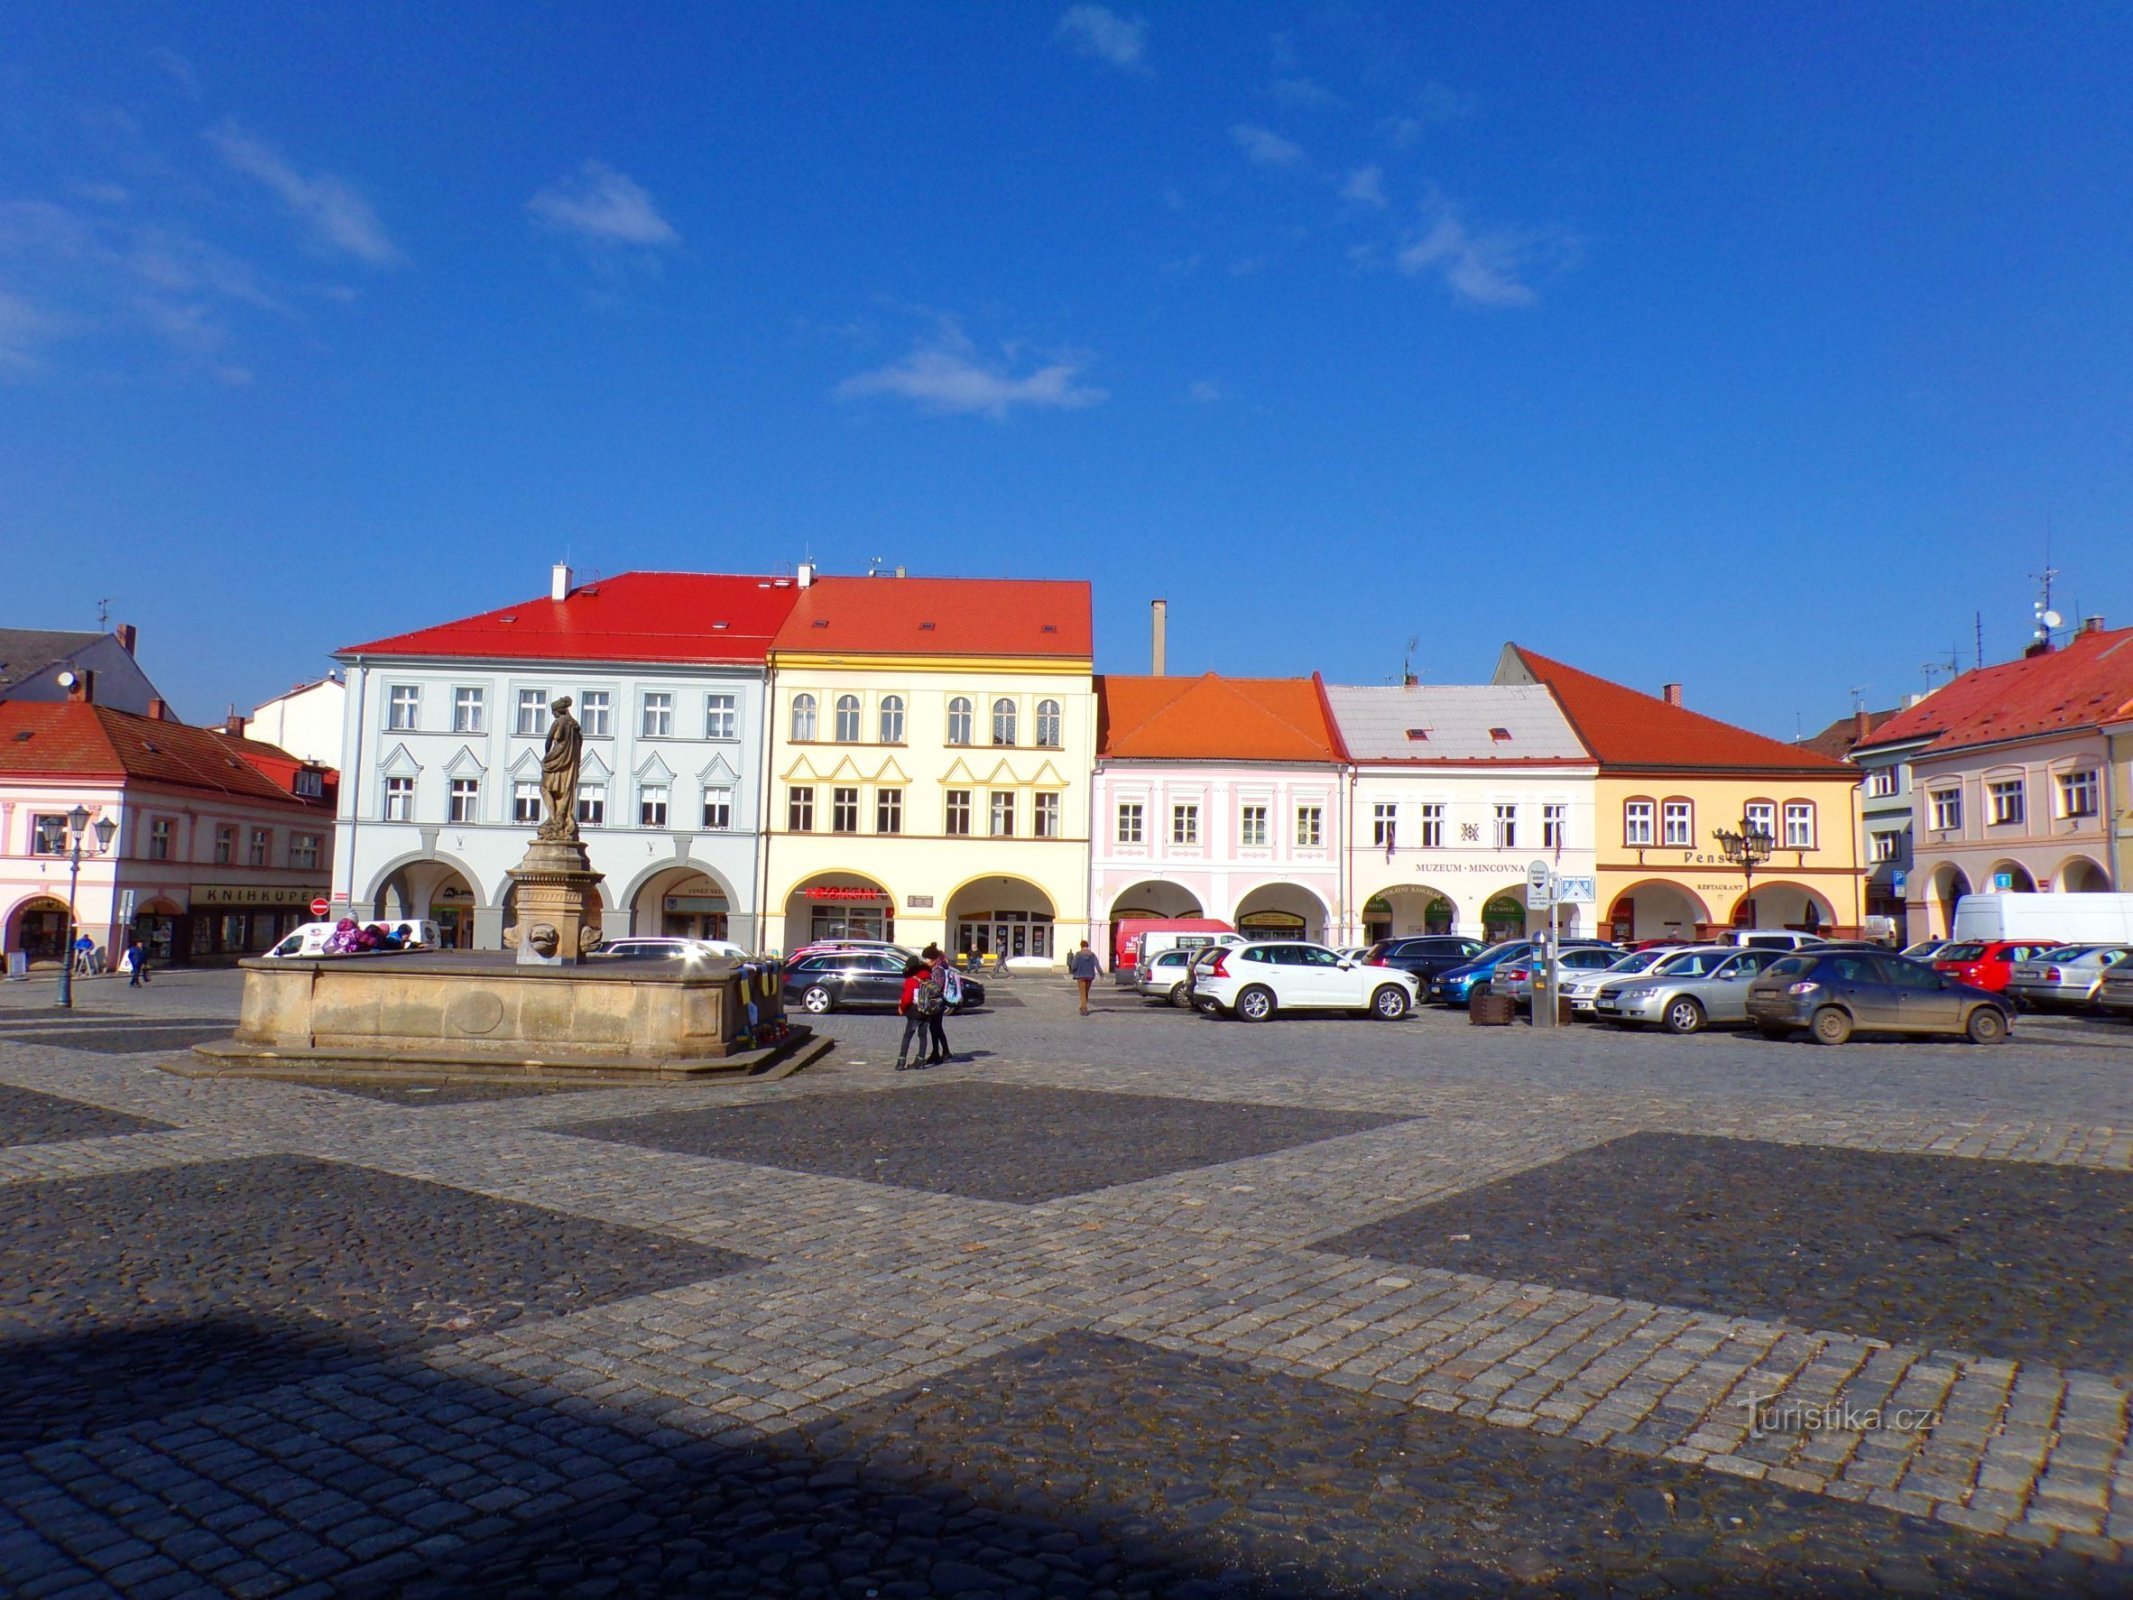 Palackého no. 73 – Valdštejnovo náměstí no. 77 (Jičín, 3.3.2022.)